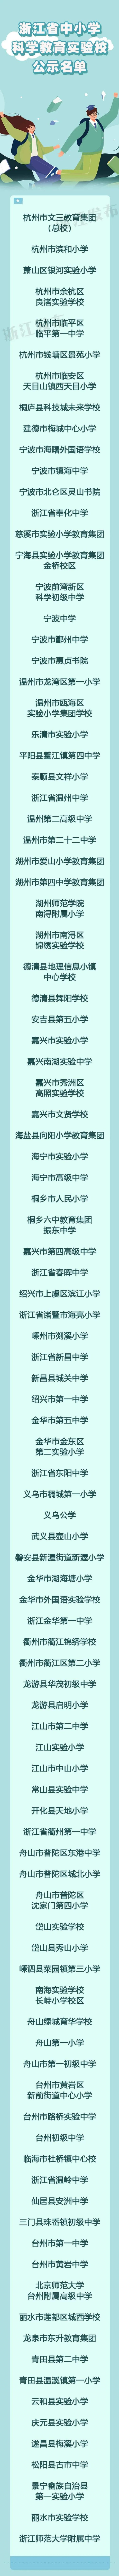 天台县及这些学校拟入选浙江省中小学科学教育实验区、实验校